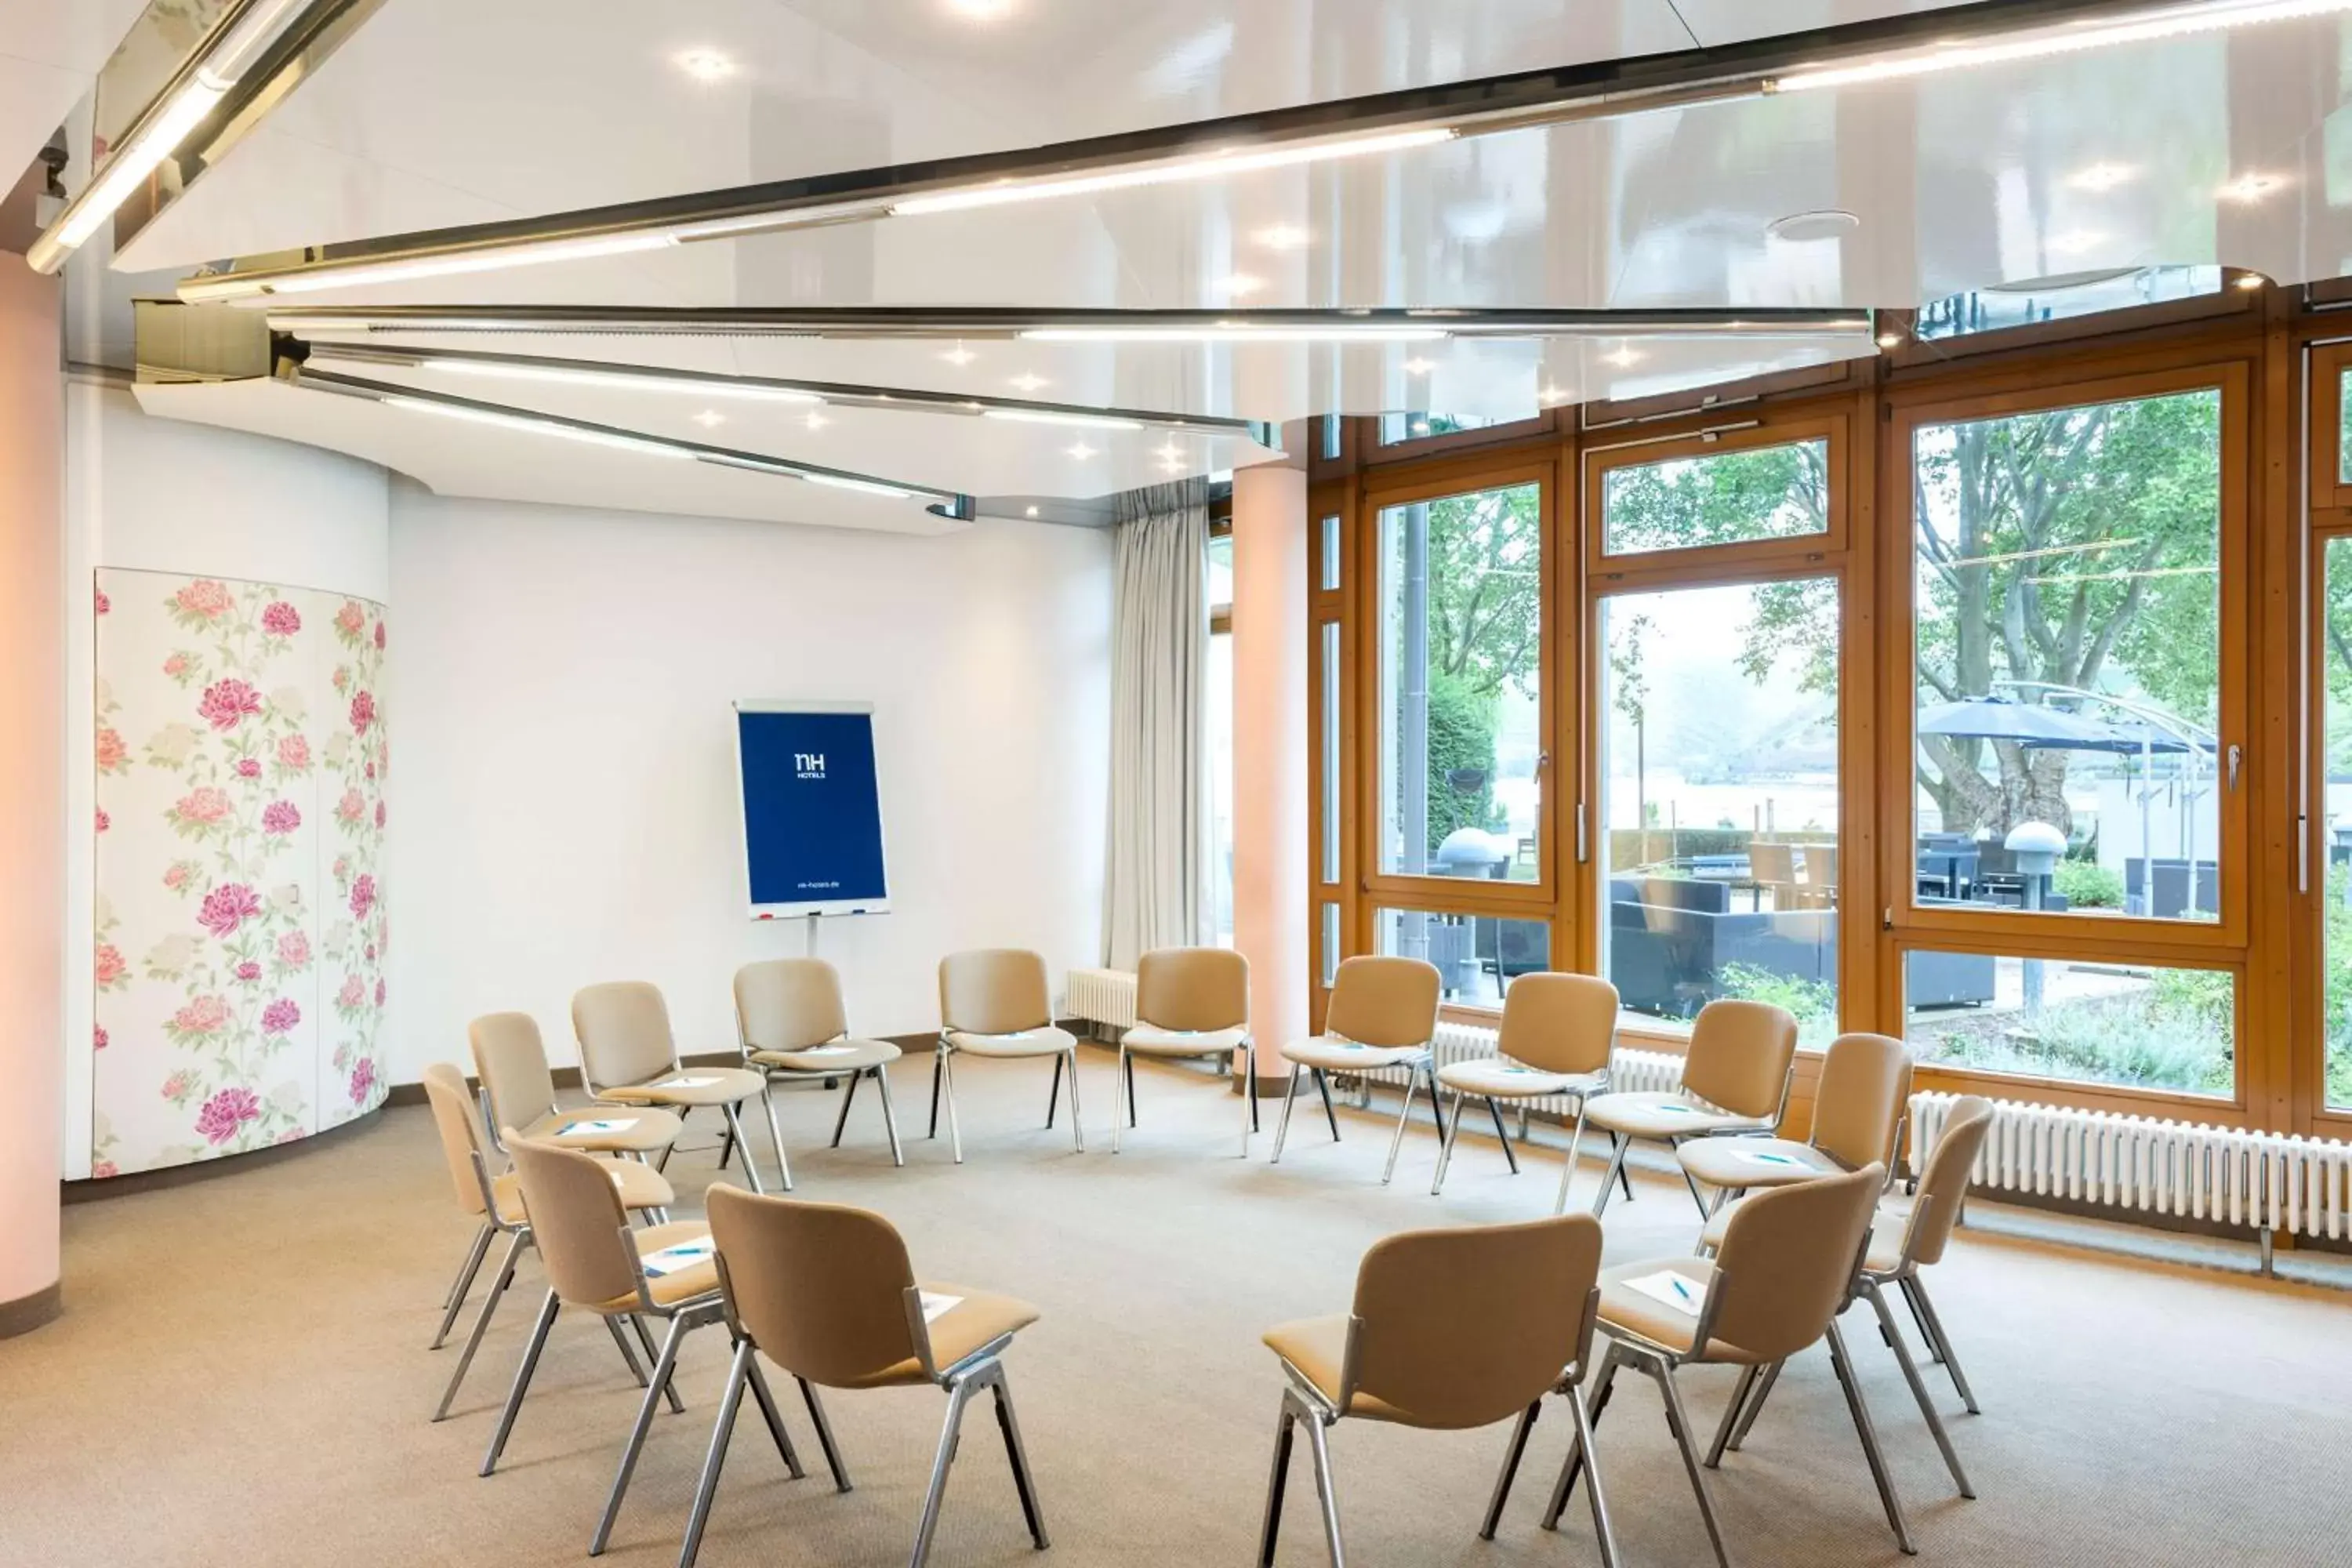 Meeting/conference room in NH Bingen